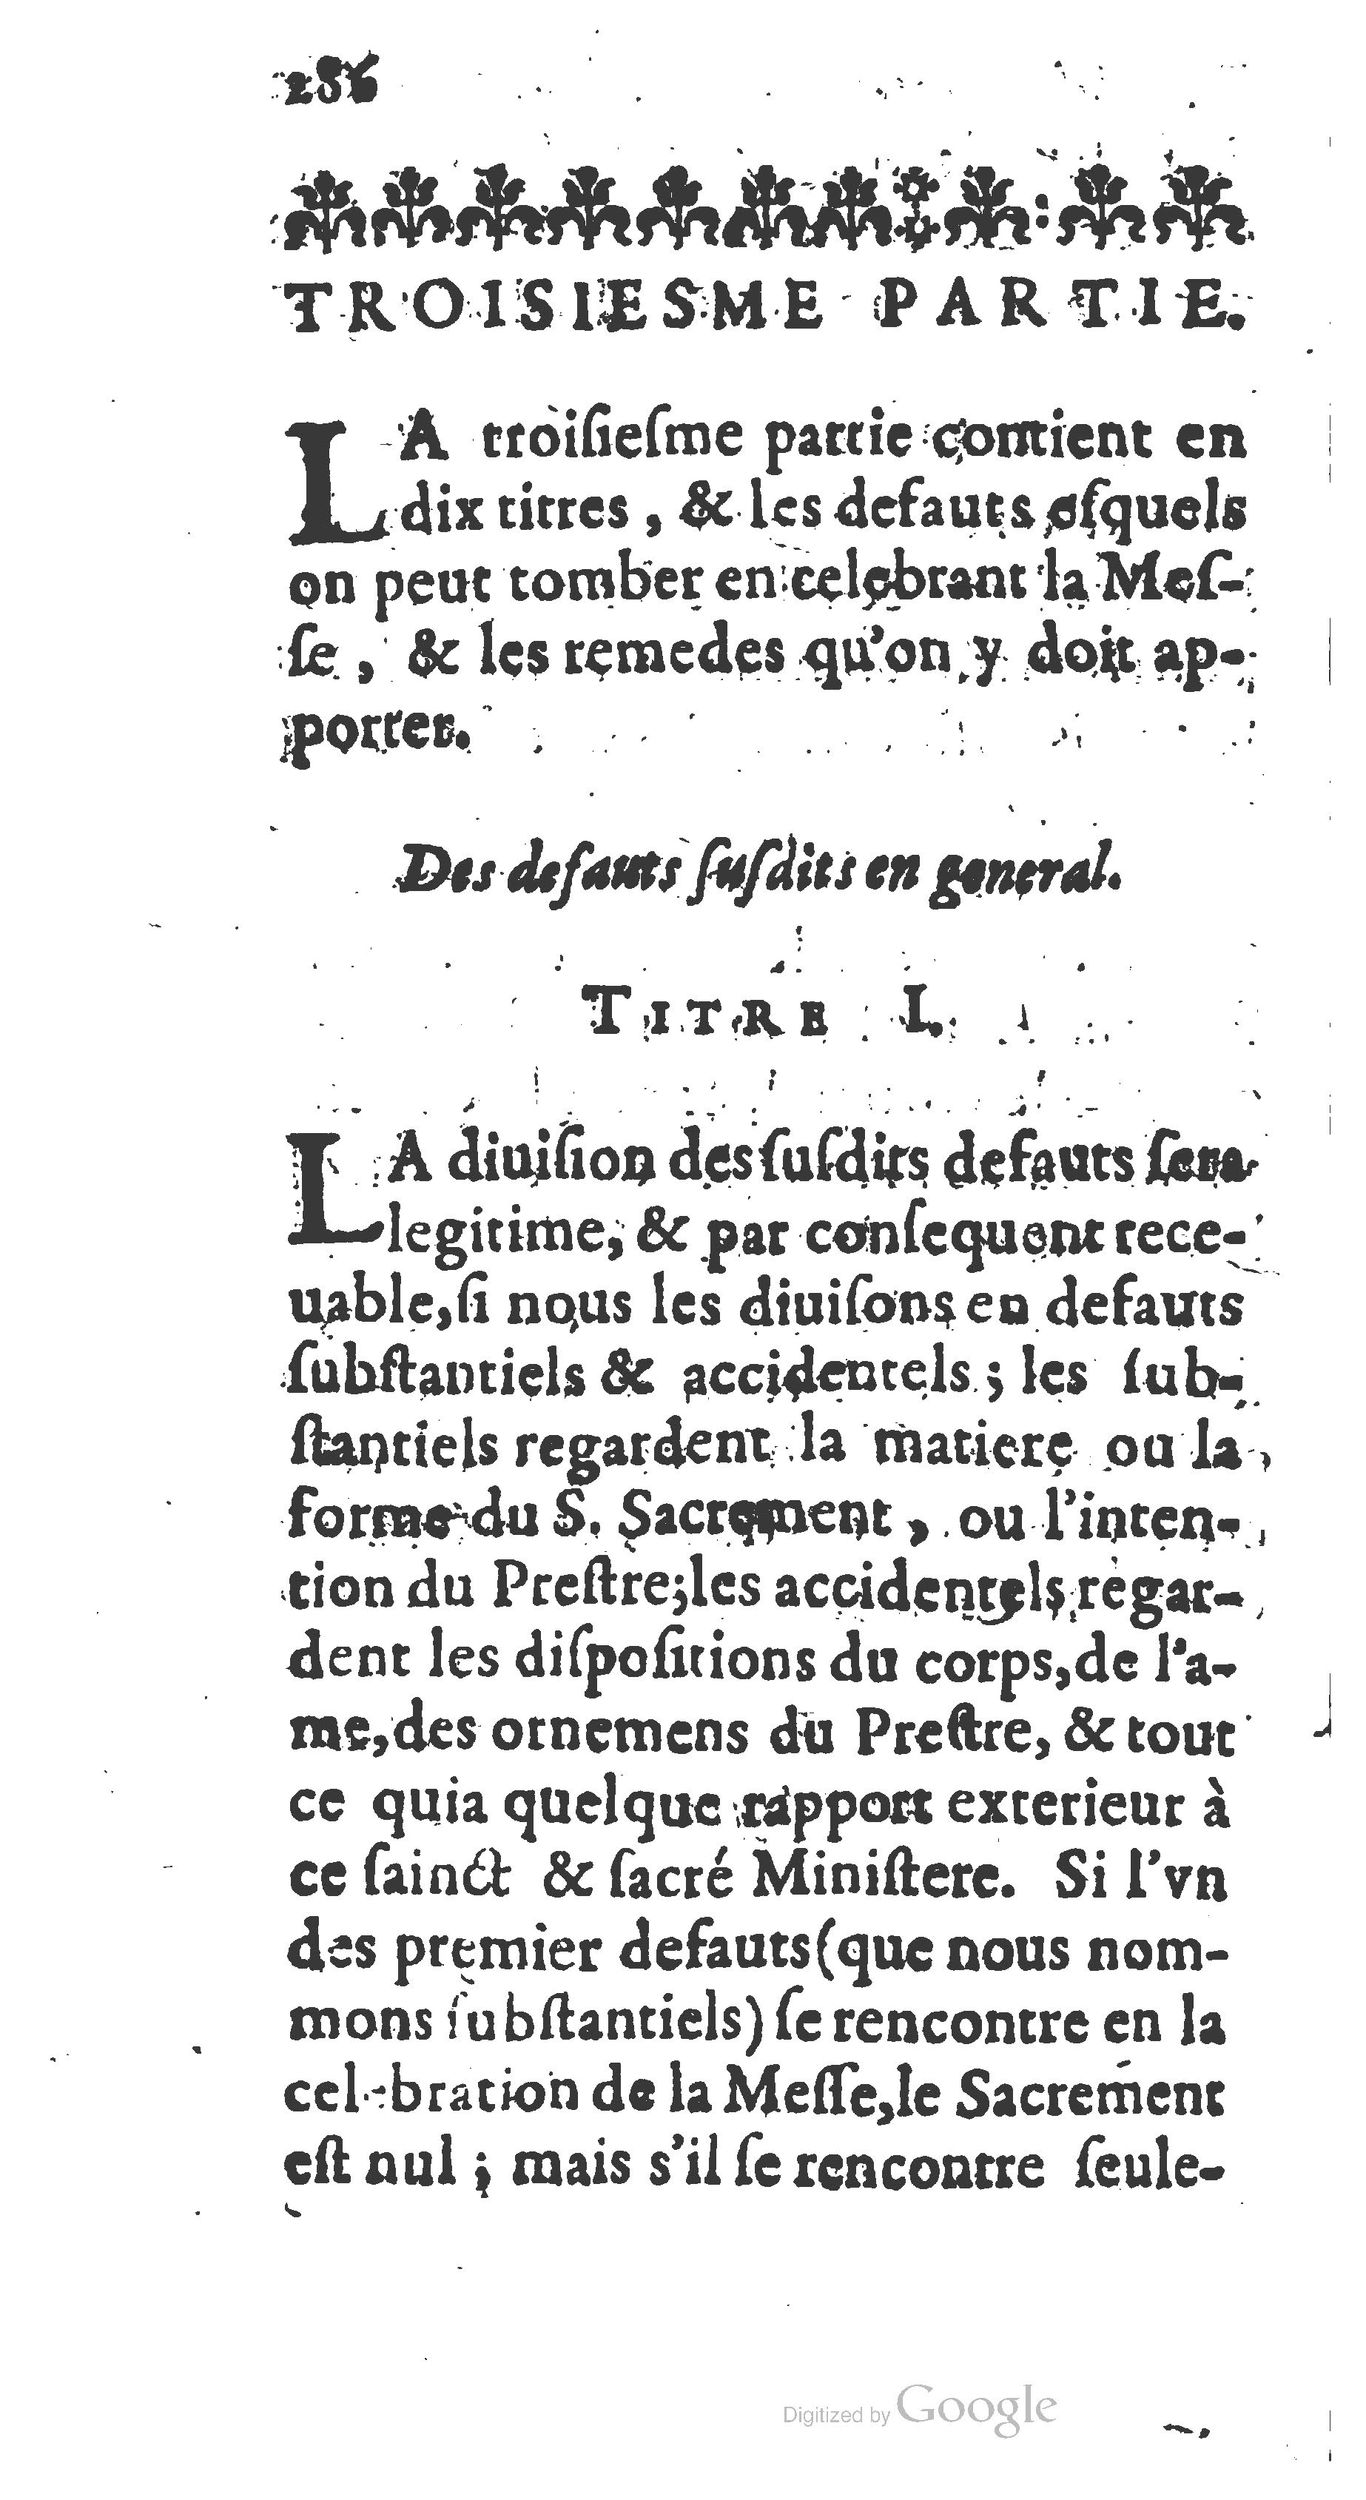 1651 Abrégé du trésor des cérémonies ecclésiastiques Guillermet_BM Lyon_Page_305.jpg